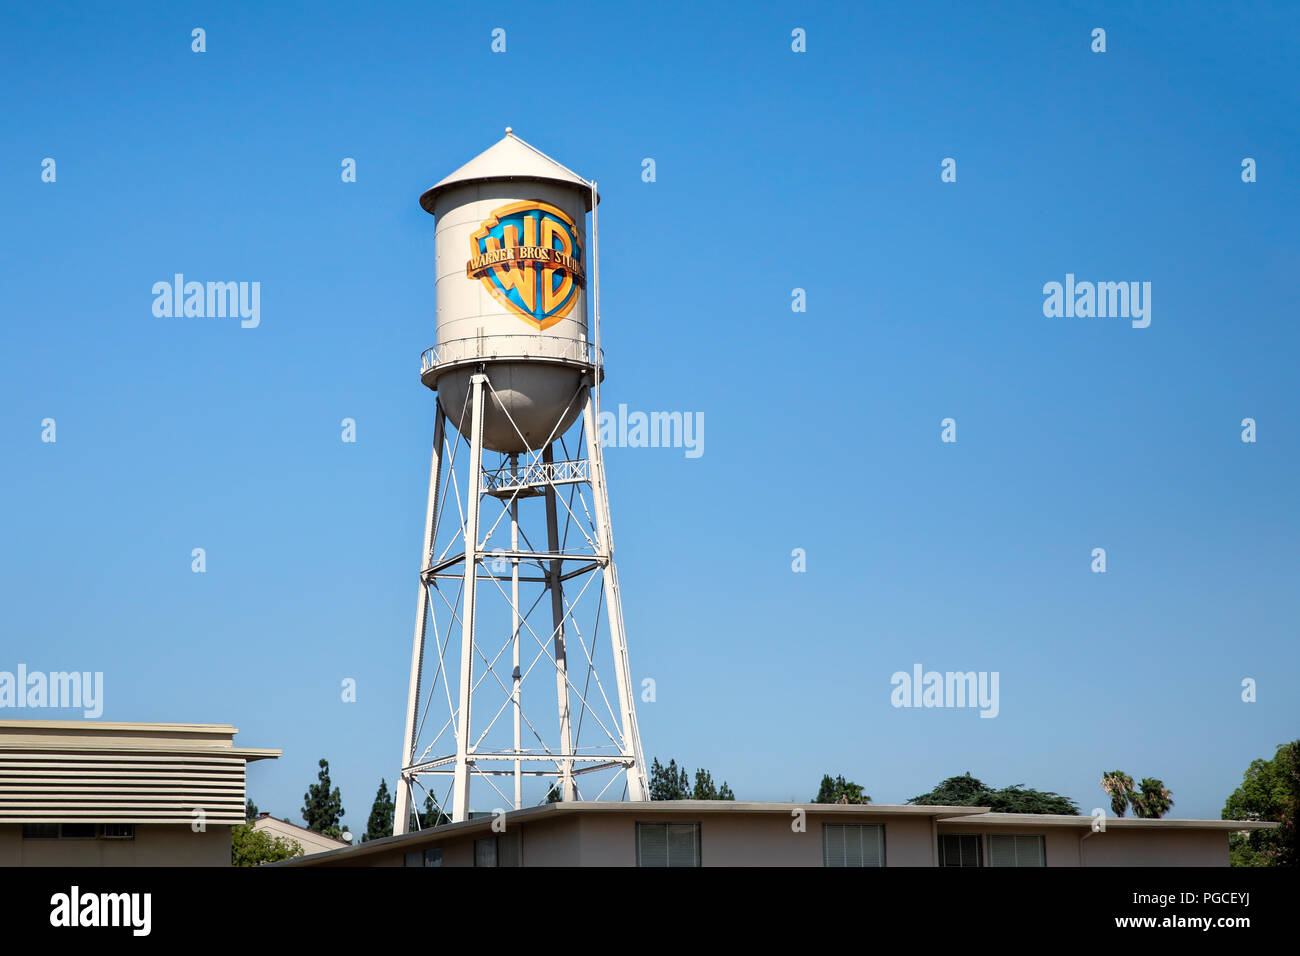 Los Angeles, Stati Uniti d'America - 19 Luglio 2017: il famoso Warner Bros studio dove i visitatori avranno la possibilità di avere un tour all'interno del lavoro in studio e vedere come i film e i programmi TV sono realizzati. Foto Stock